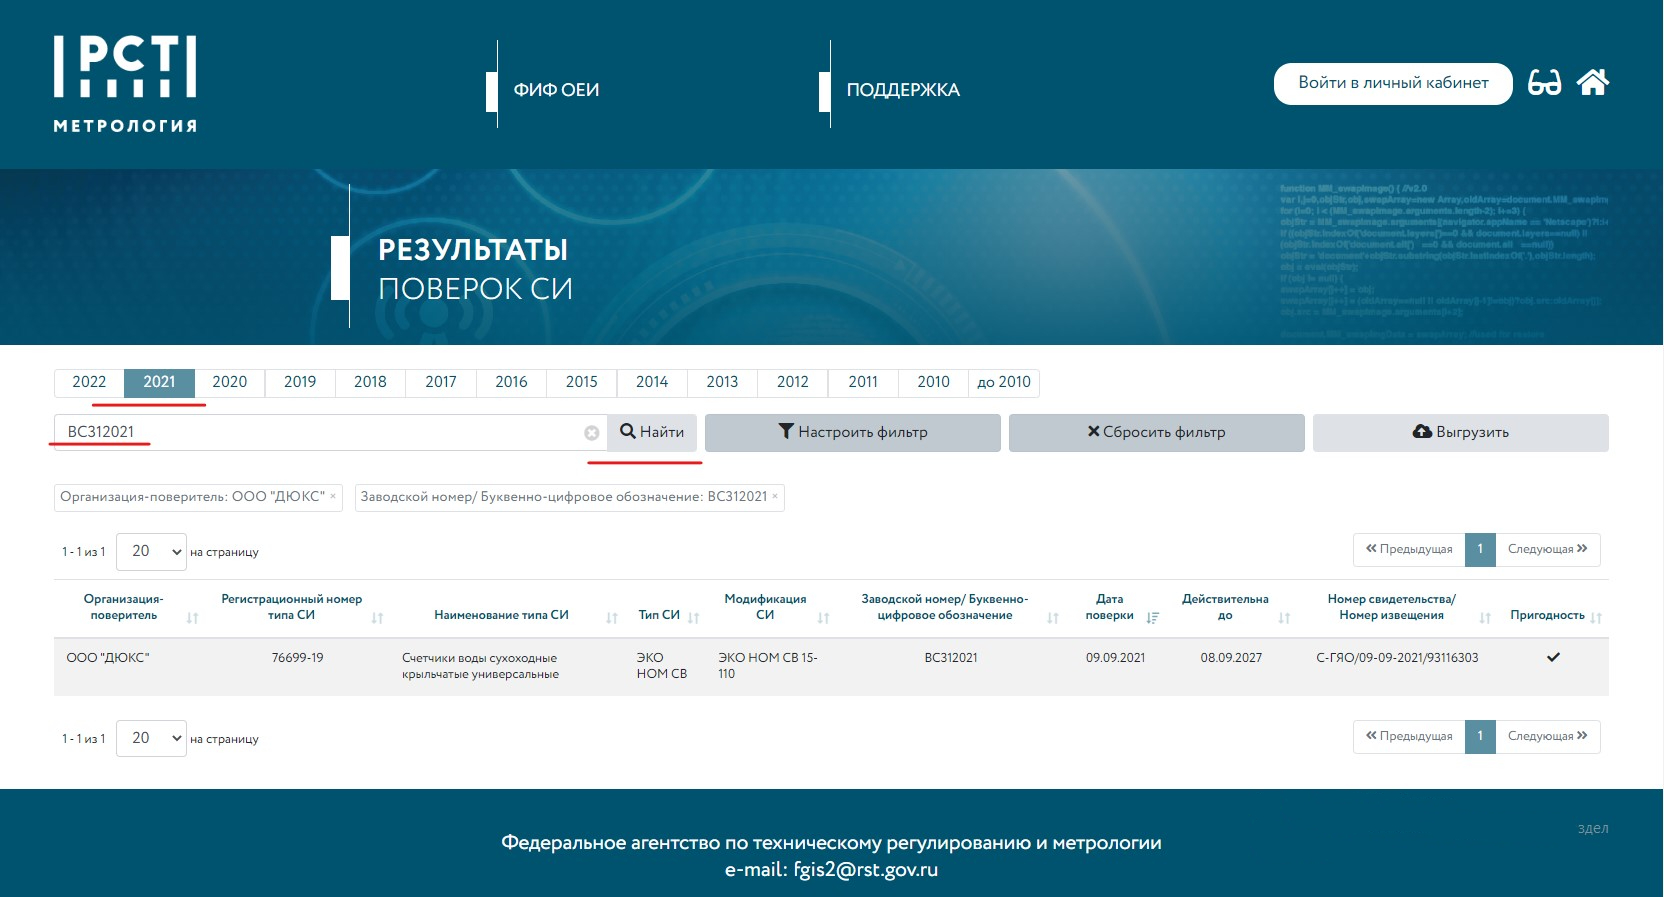 Фгис аршин официальный сайт поверка счетчиков воды москва сведения о результатах